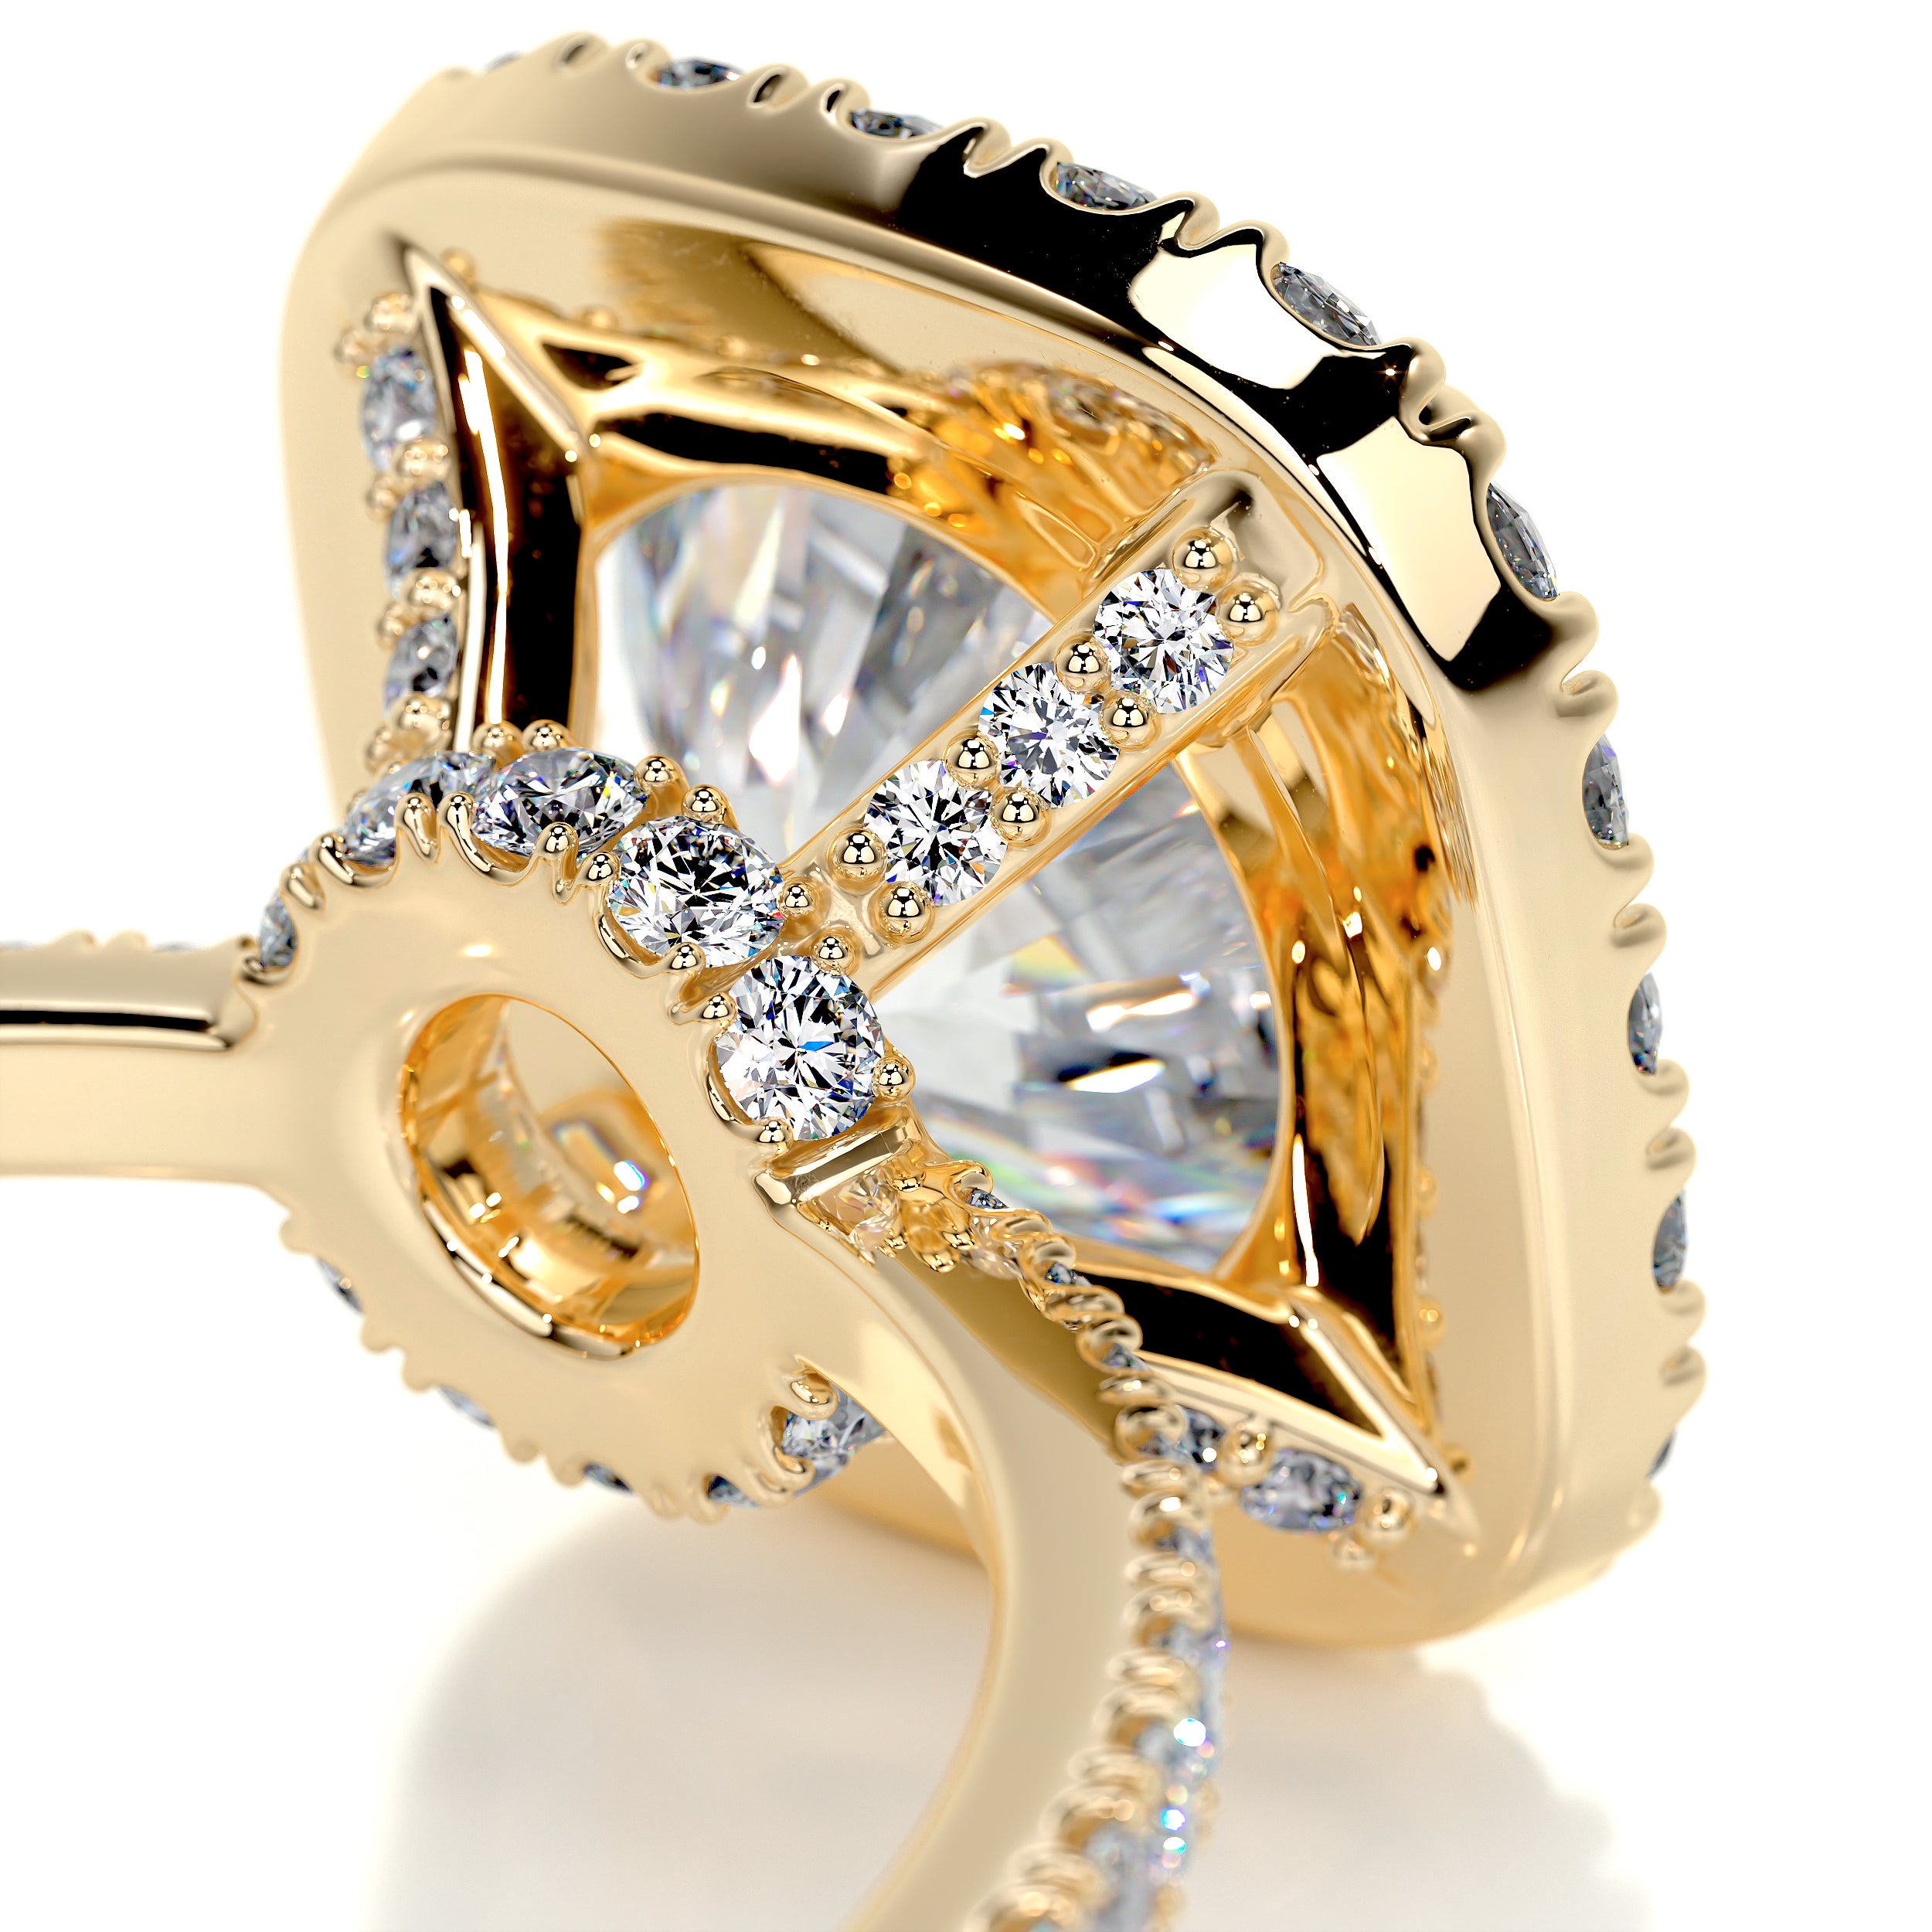 Catalina Moissanite & Diamonds Ring -18K Yellow Gold